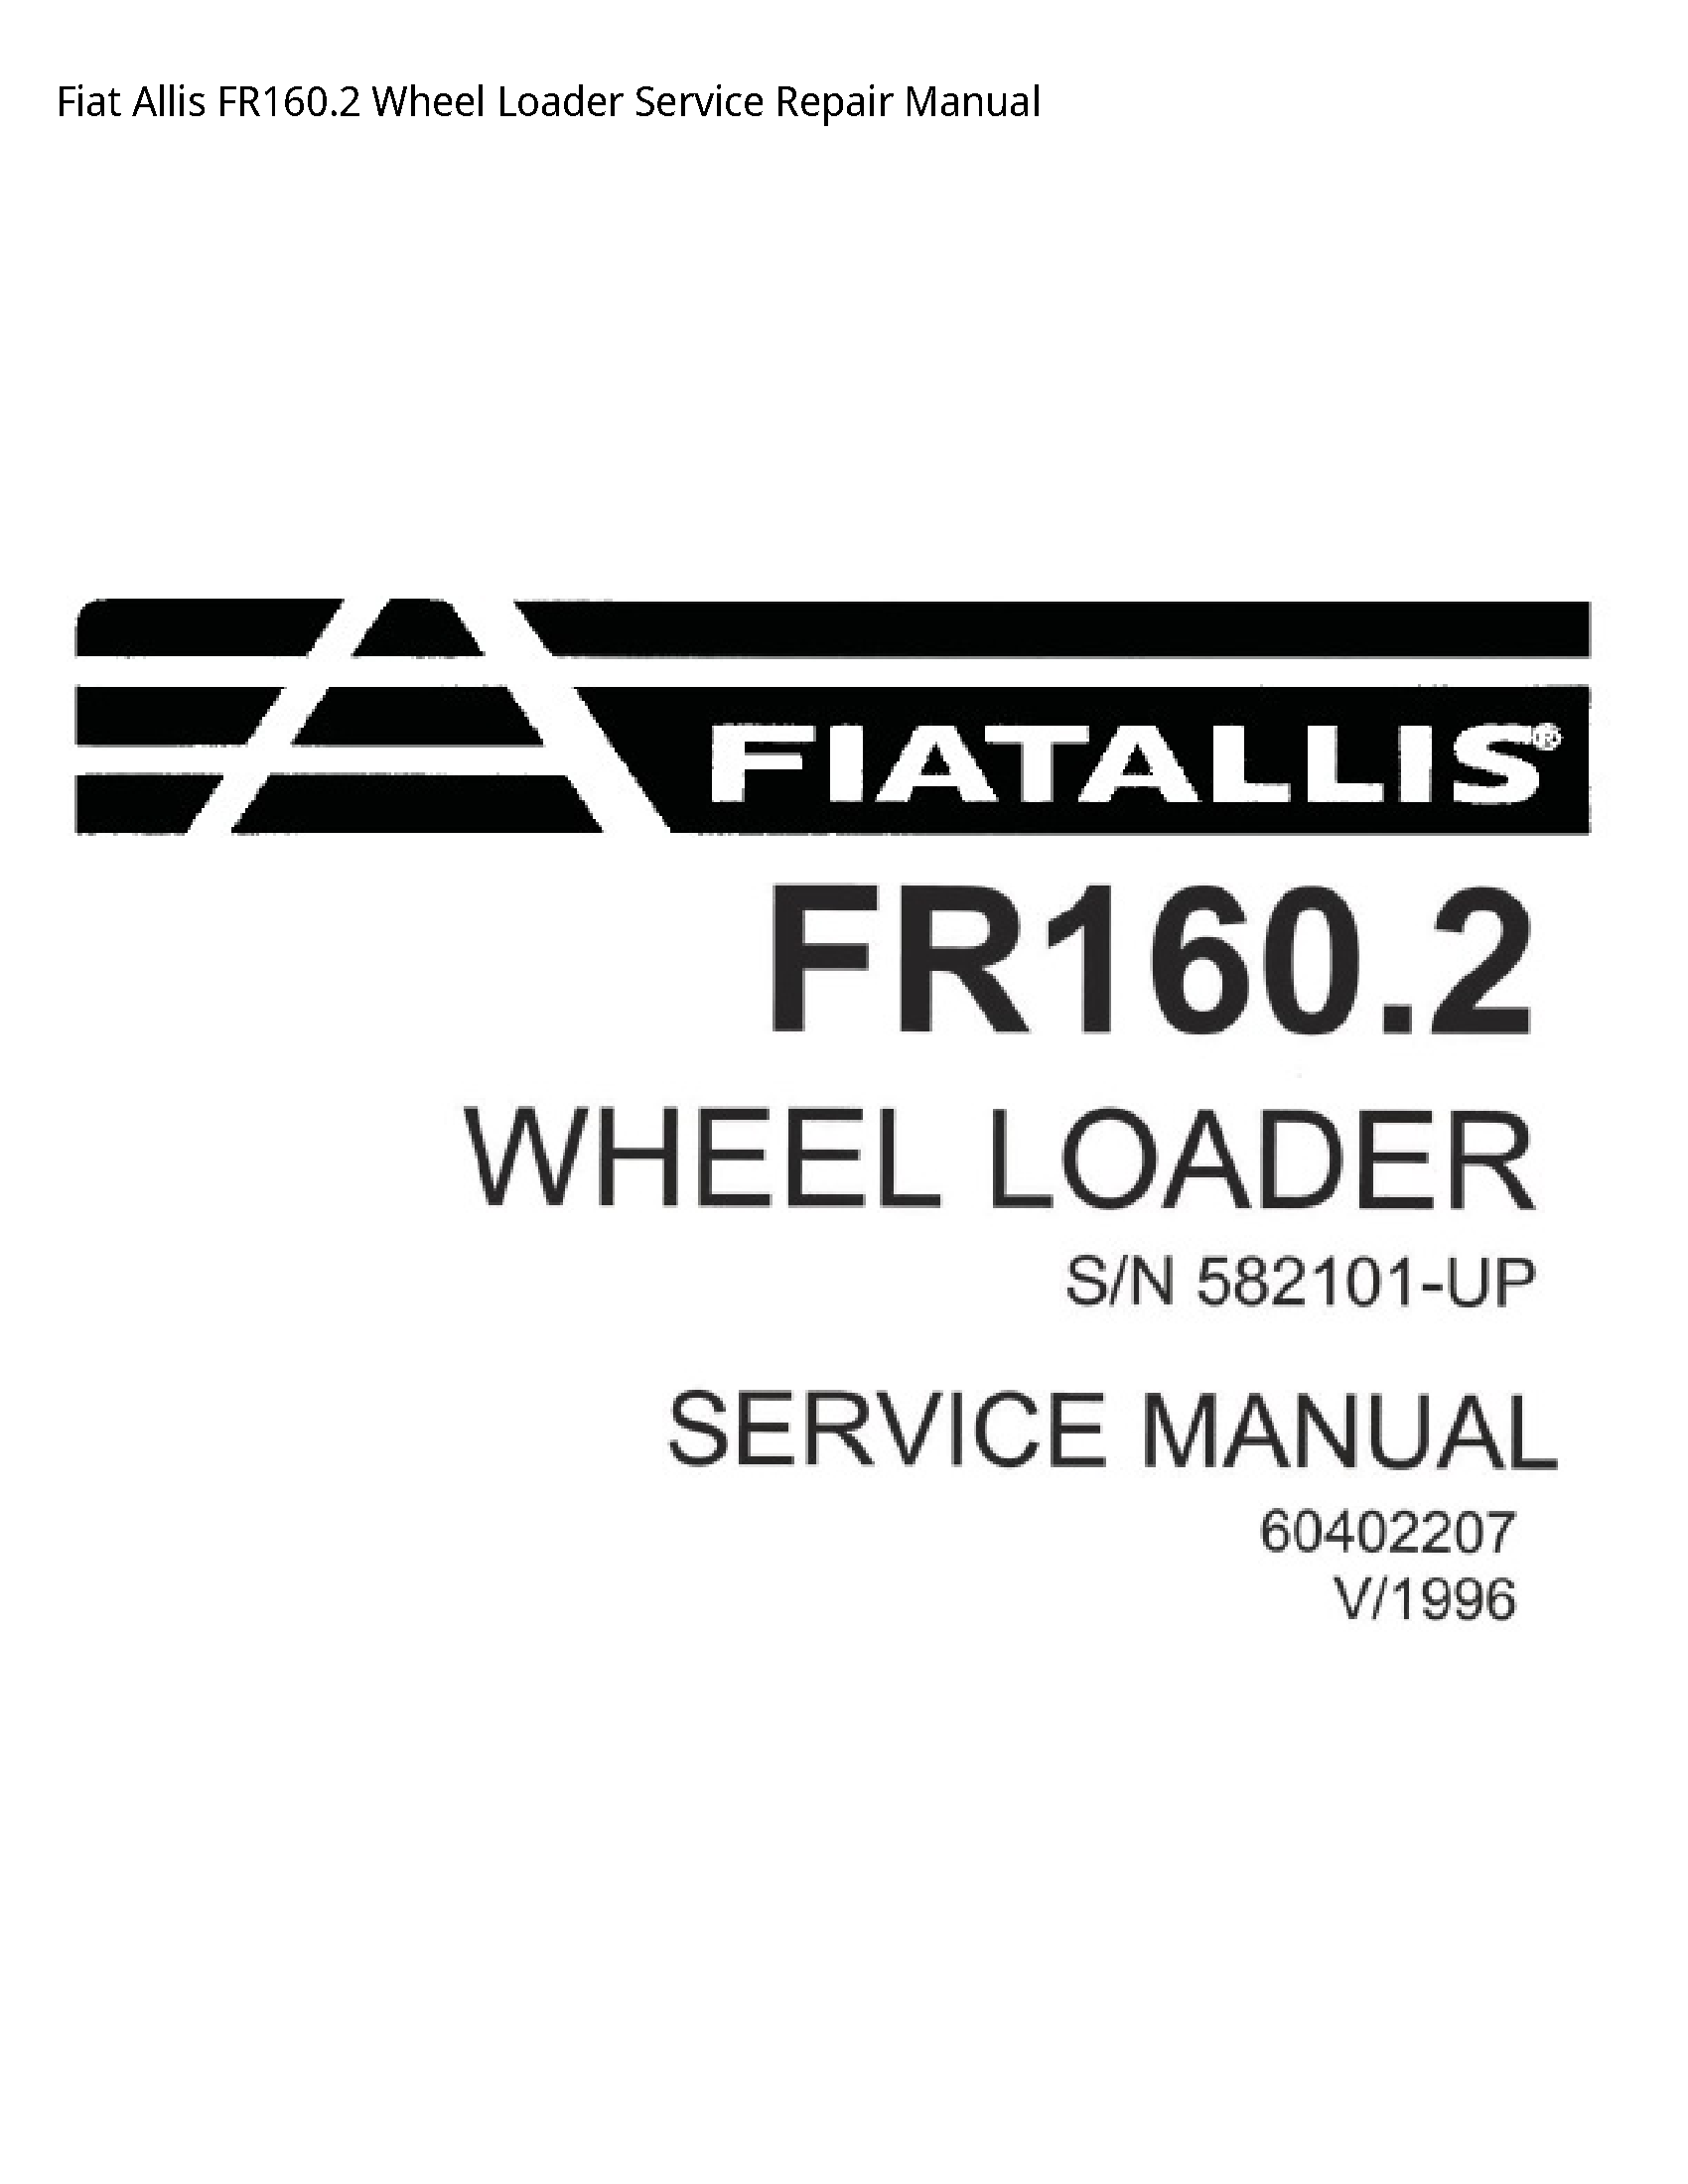 Fiat Allis FR160.2 Wheel Loader manual